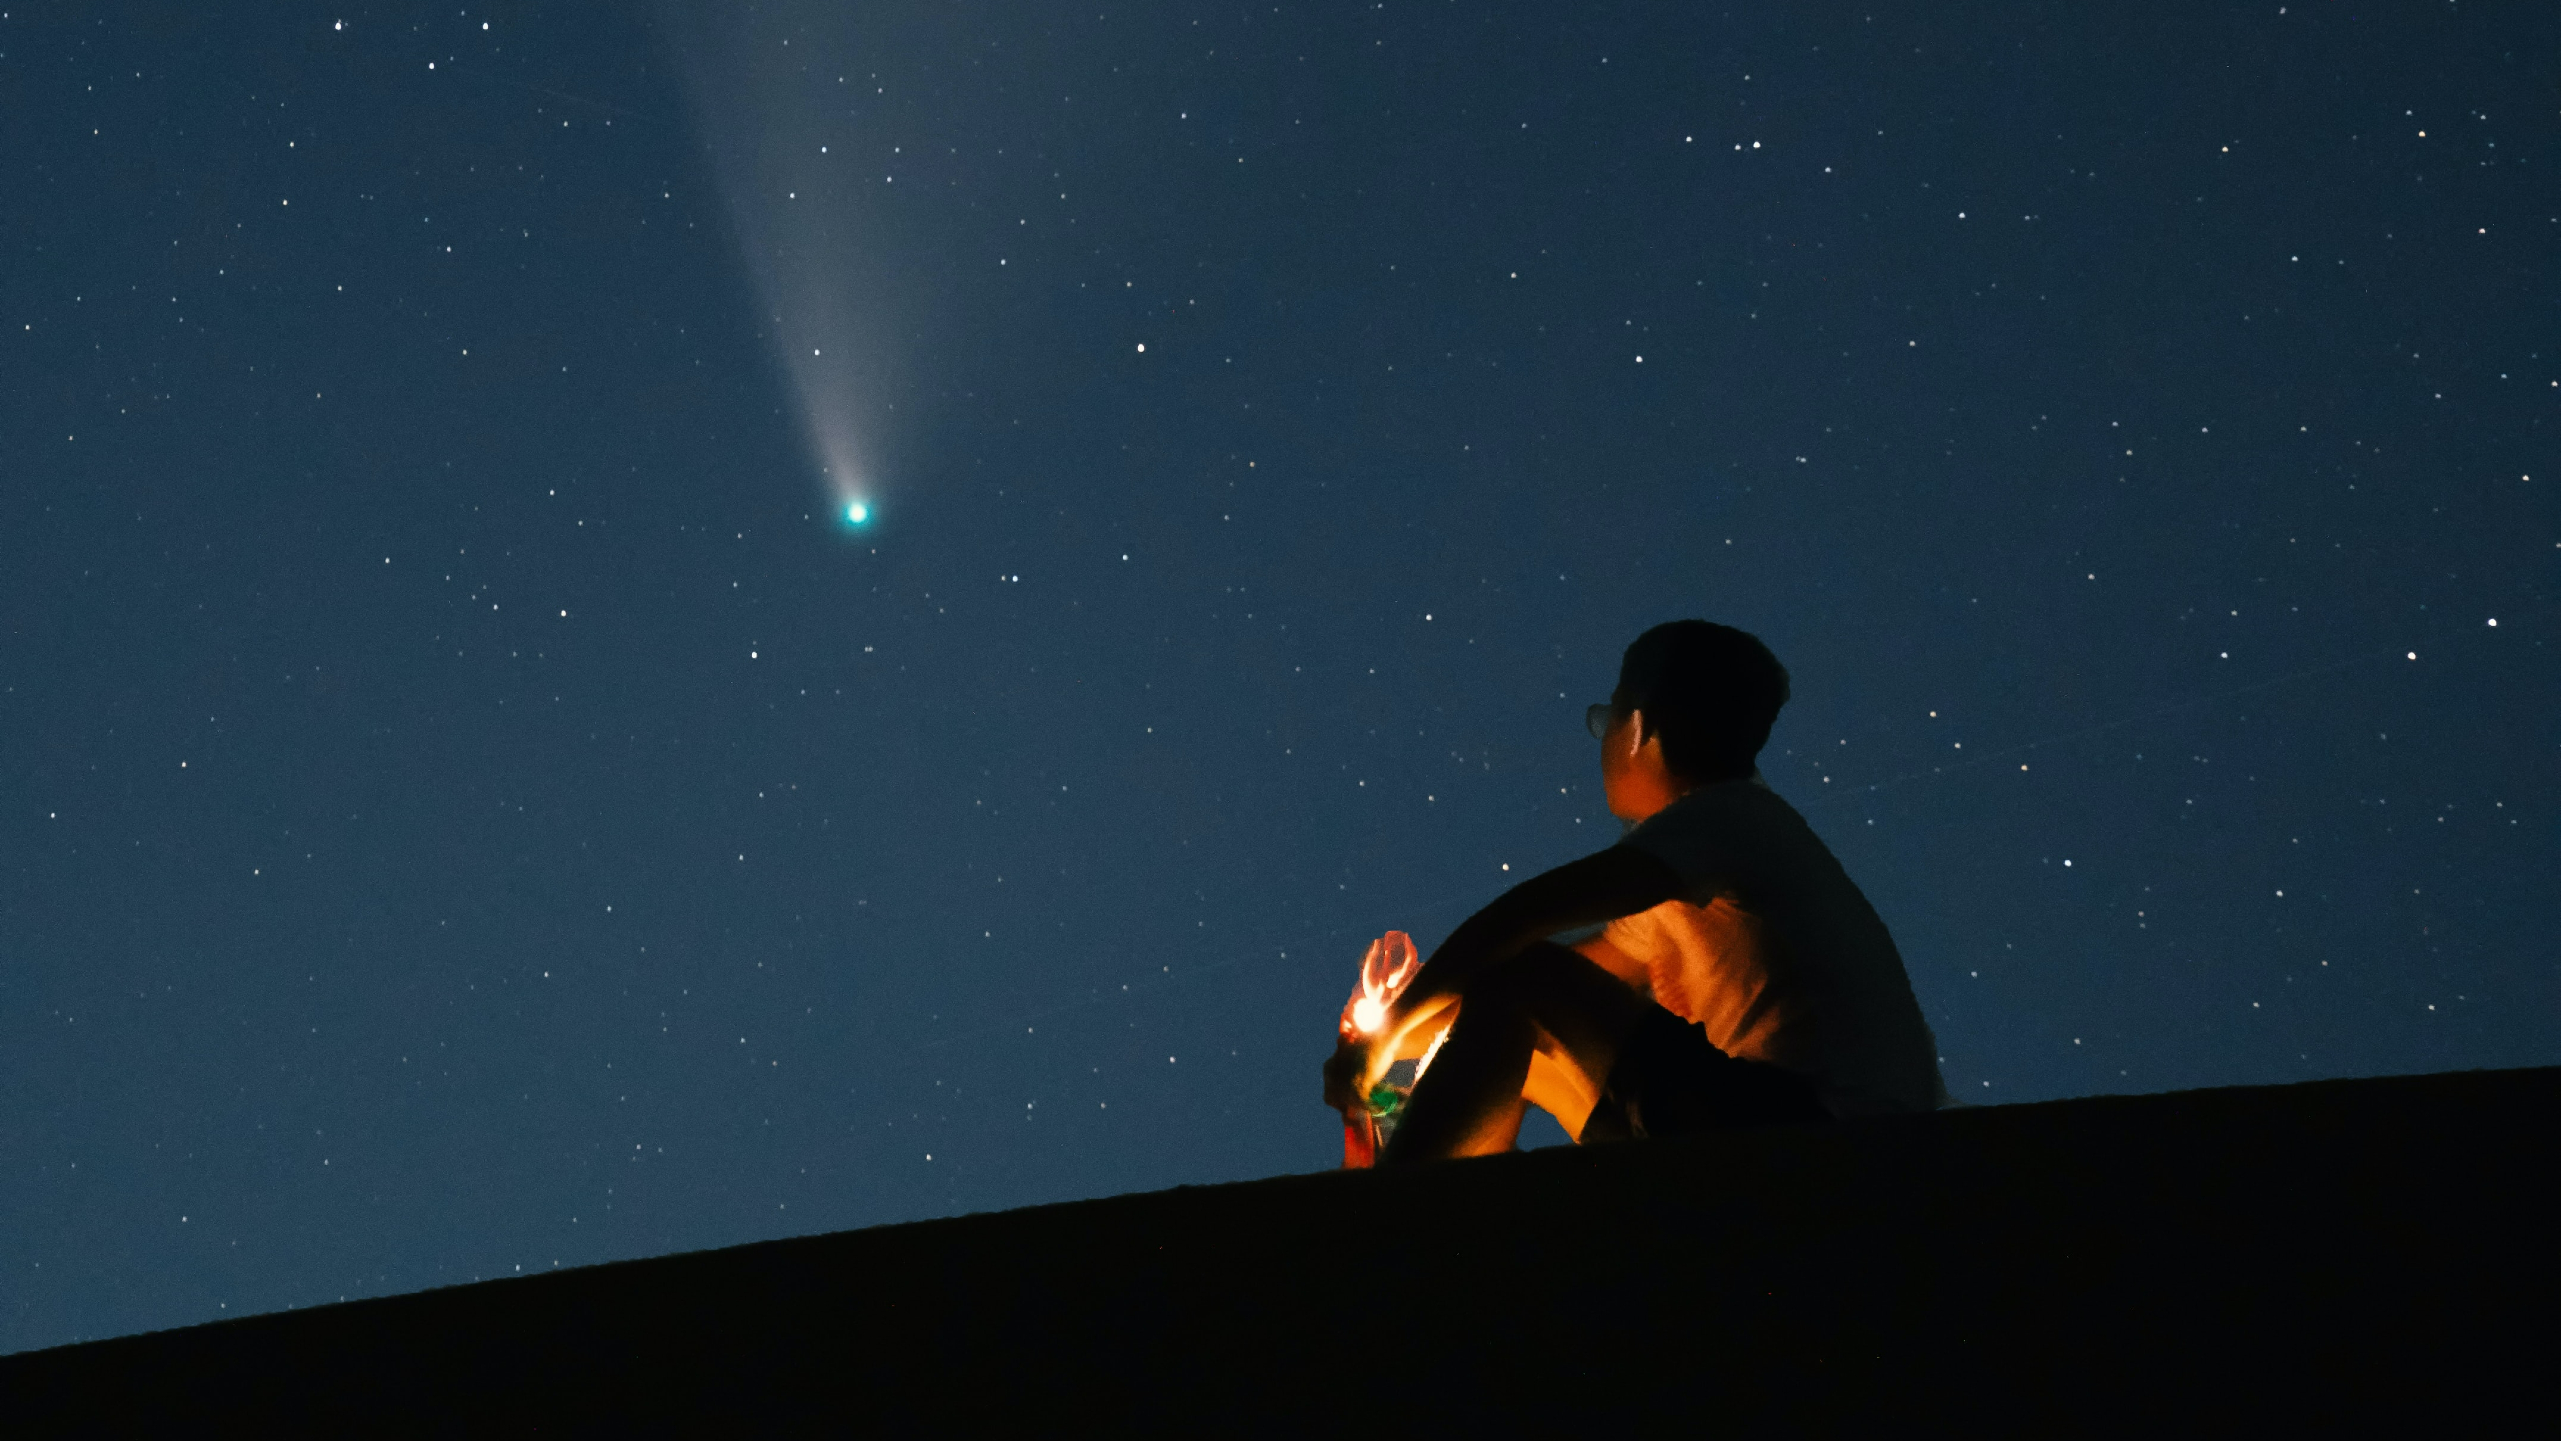 La cometa viene vista ad occhio nudo per la prima volta dai tempi dei Neanderthal